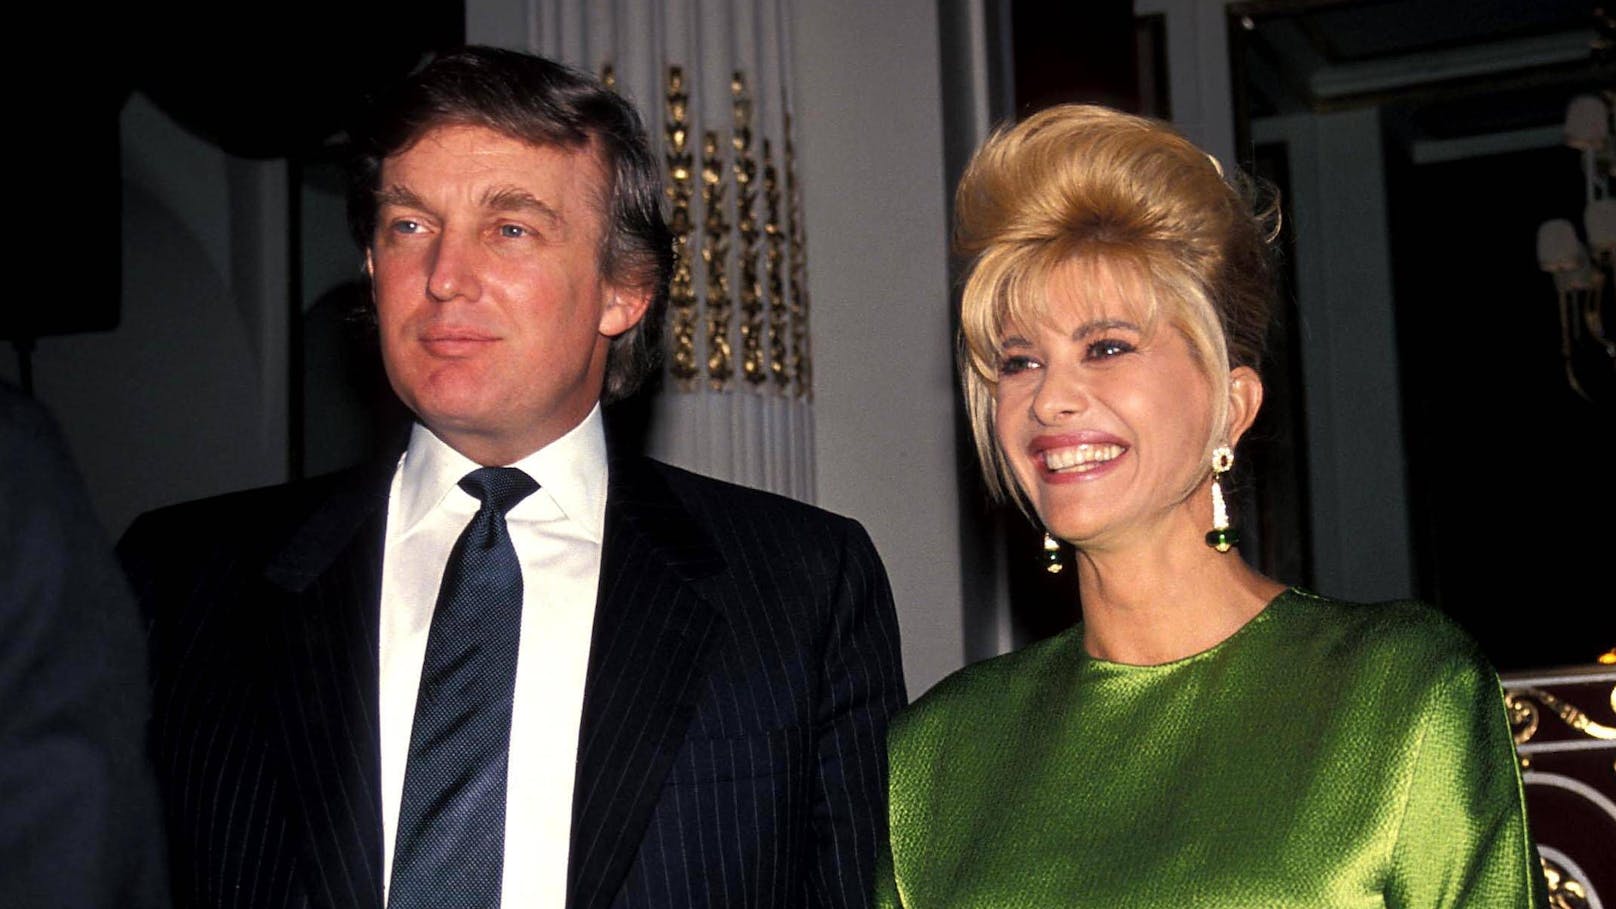 Der spätere US-Präsident Donald Trump und seine damalige Ehefrau Ivana auf einem frühen Foto der beiden. Aufnahmedatum geschätzt 1980.